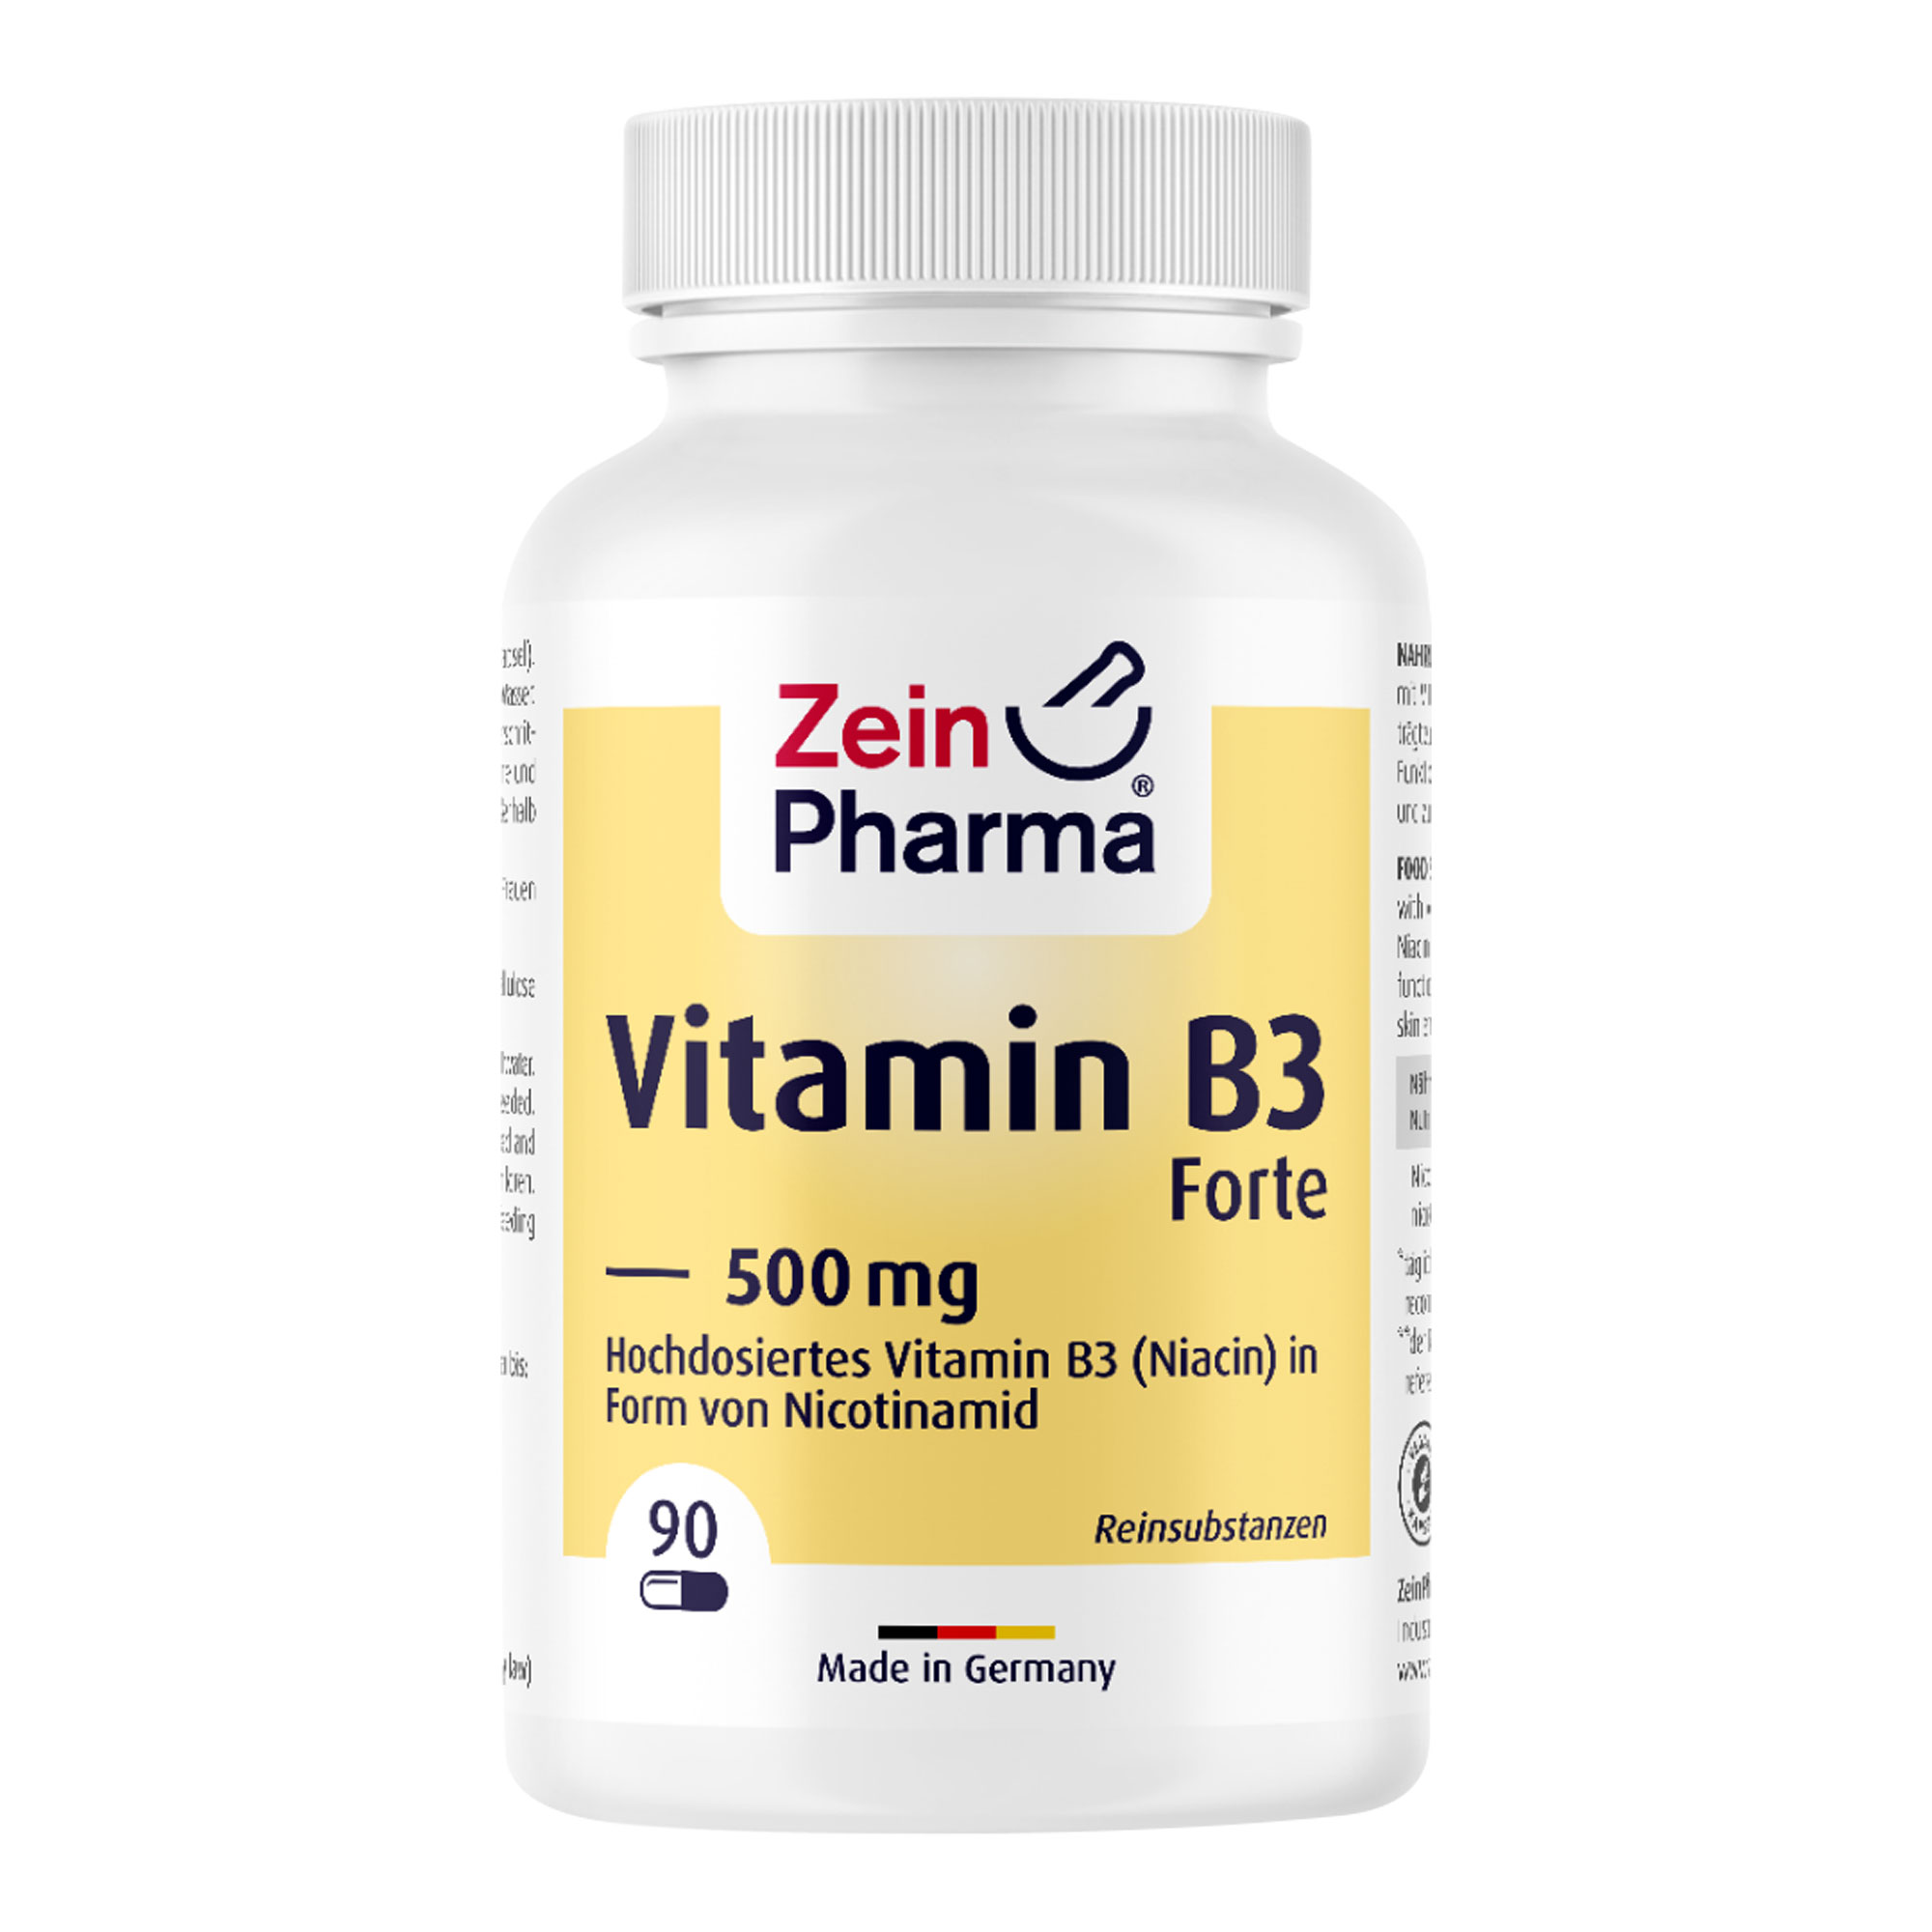 Nahrungsergänzungsmittel mit Vitamin B3 (Niacin) in Form von Nicotinamid.